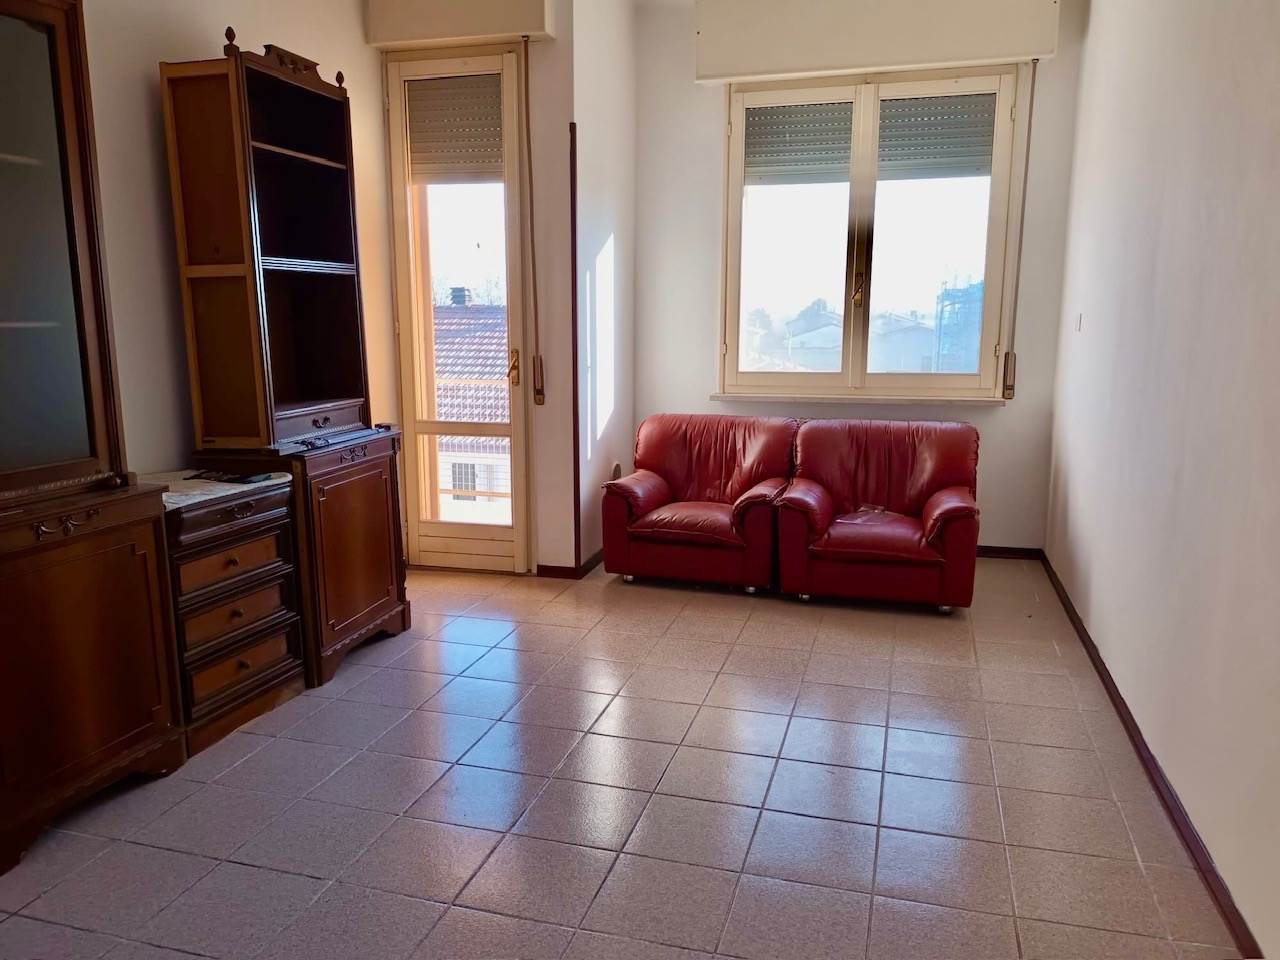 Appartamento in vendita a Ripalta Cremasca, 3 locali, prezzo € 76.000 | PortaleAgenzieImmobiliari.it